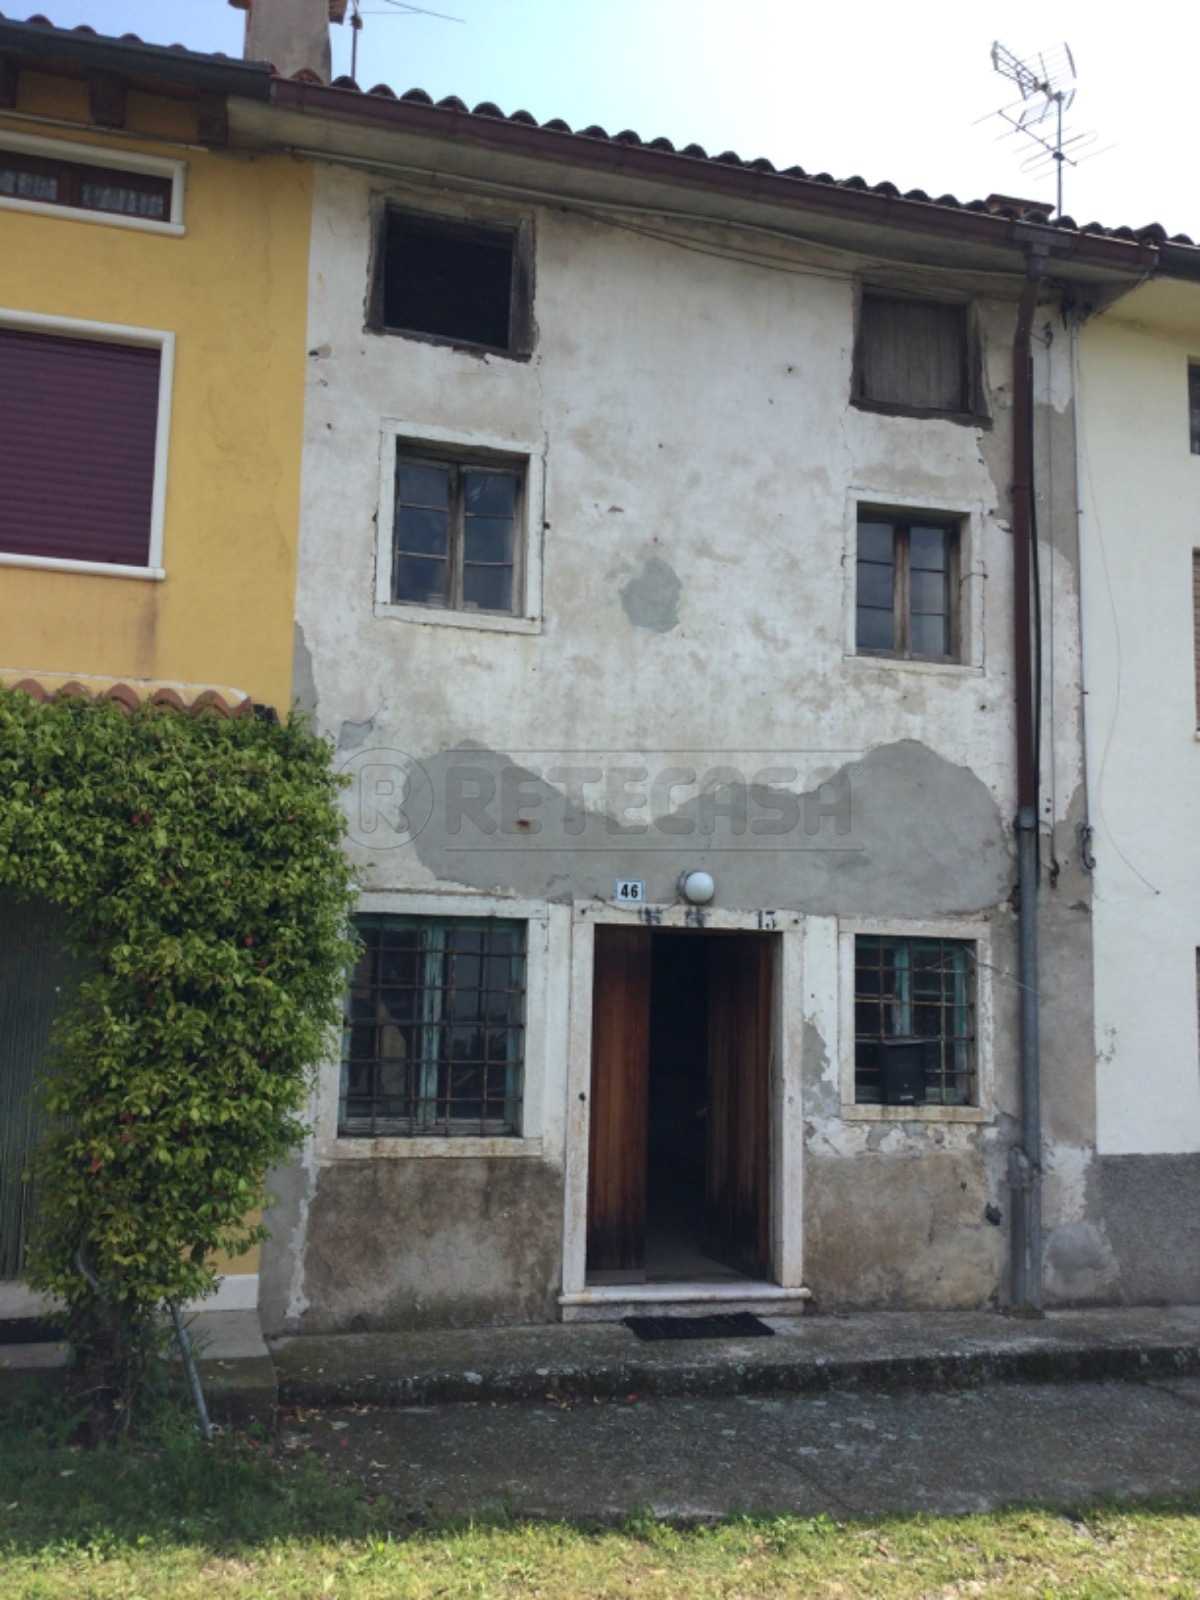 Casa indipendente in Vendita a Nogarole Vicentino Via Rondini